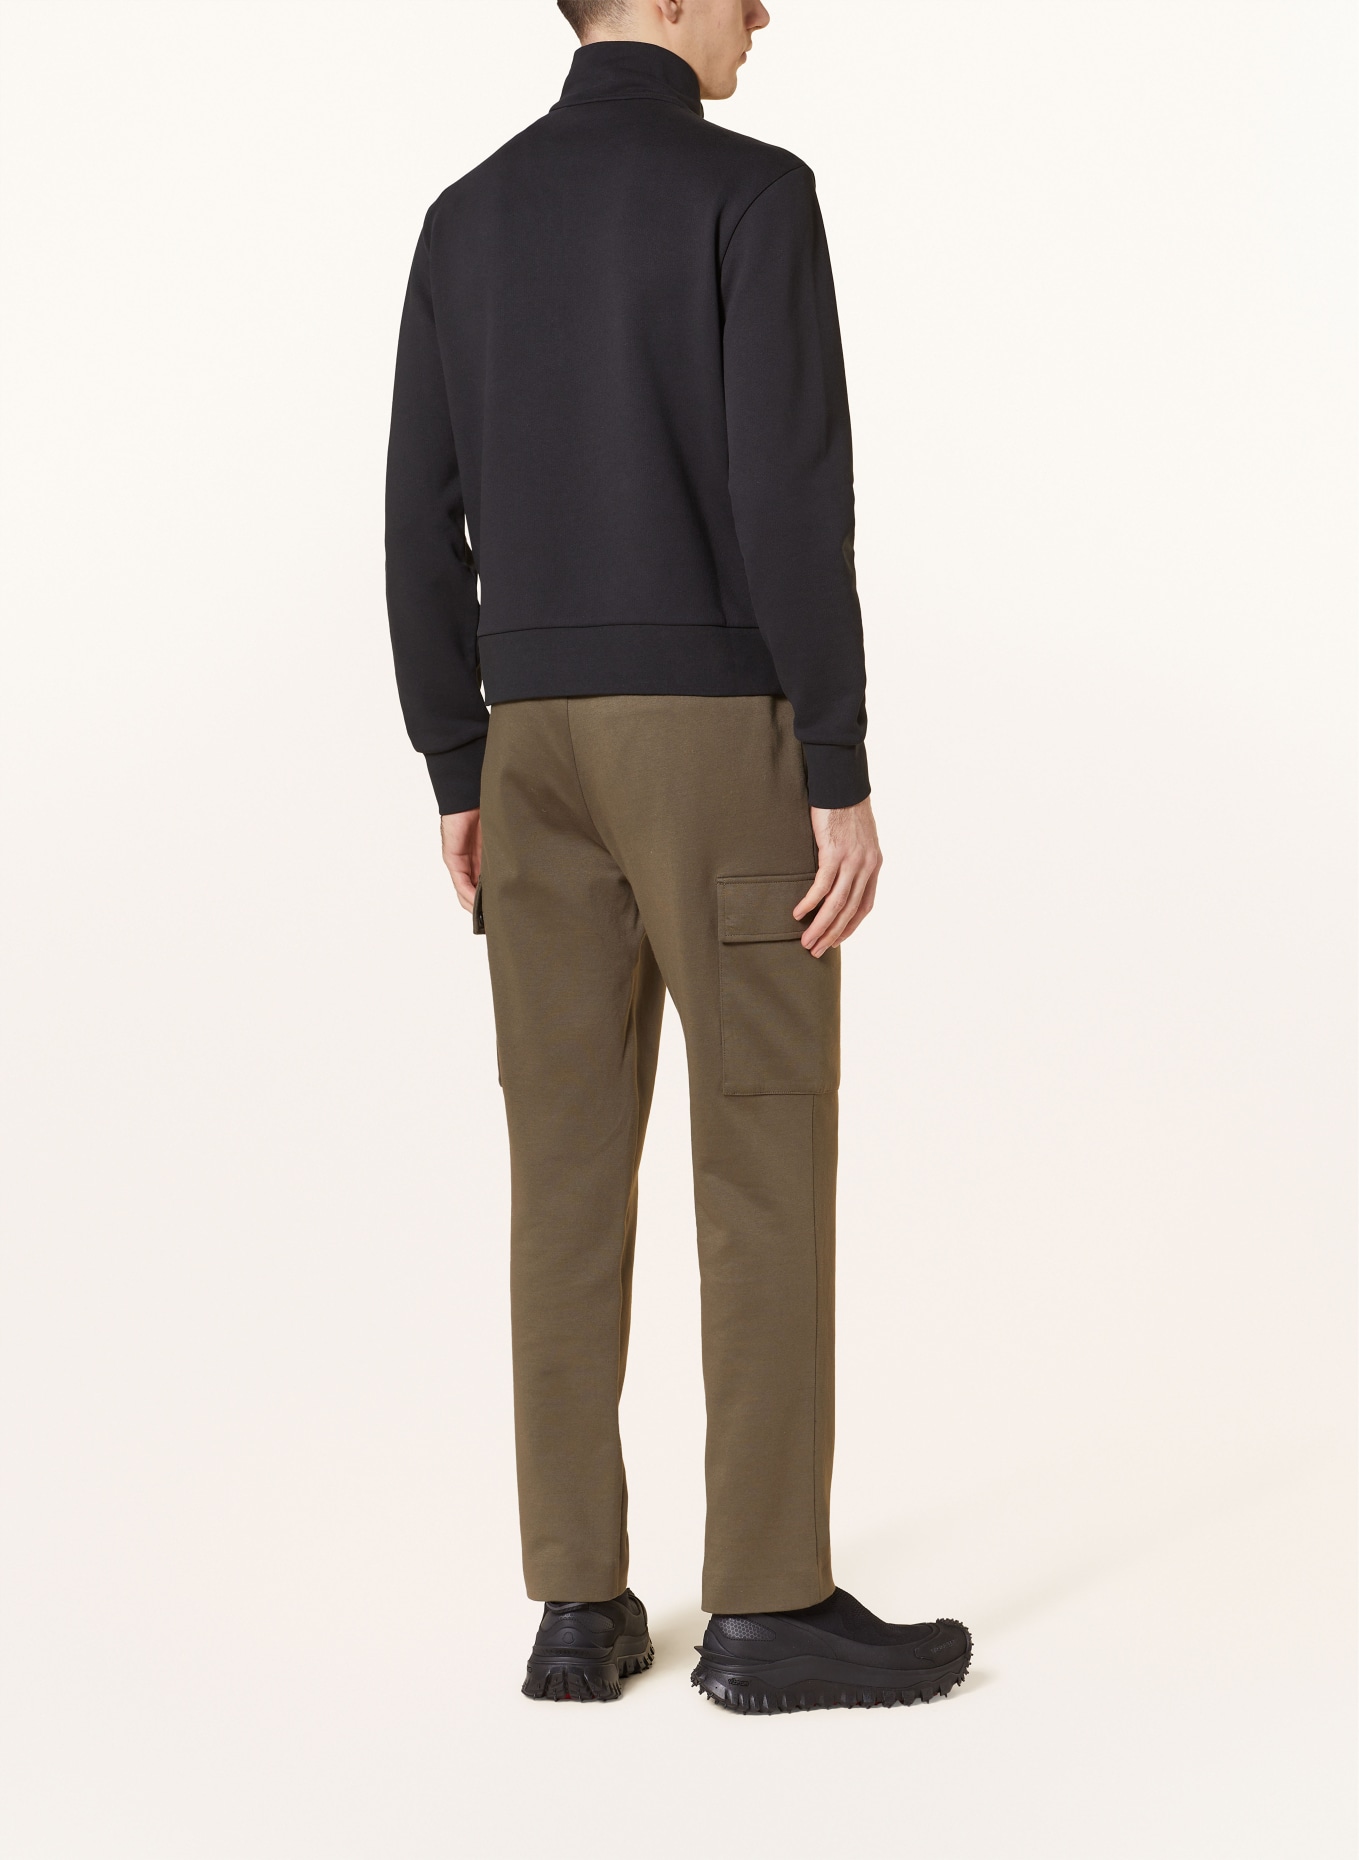 MONCLER Half-zip sweater in sweatshirt fabric, Color: BLACK (Image 3)